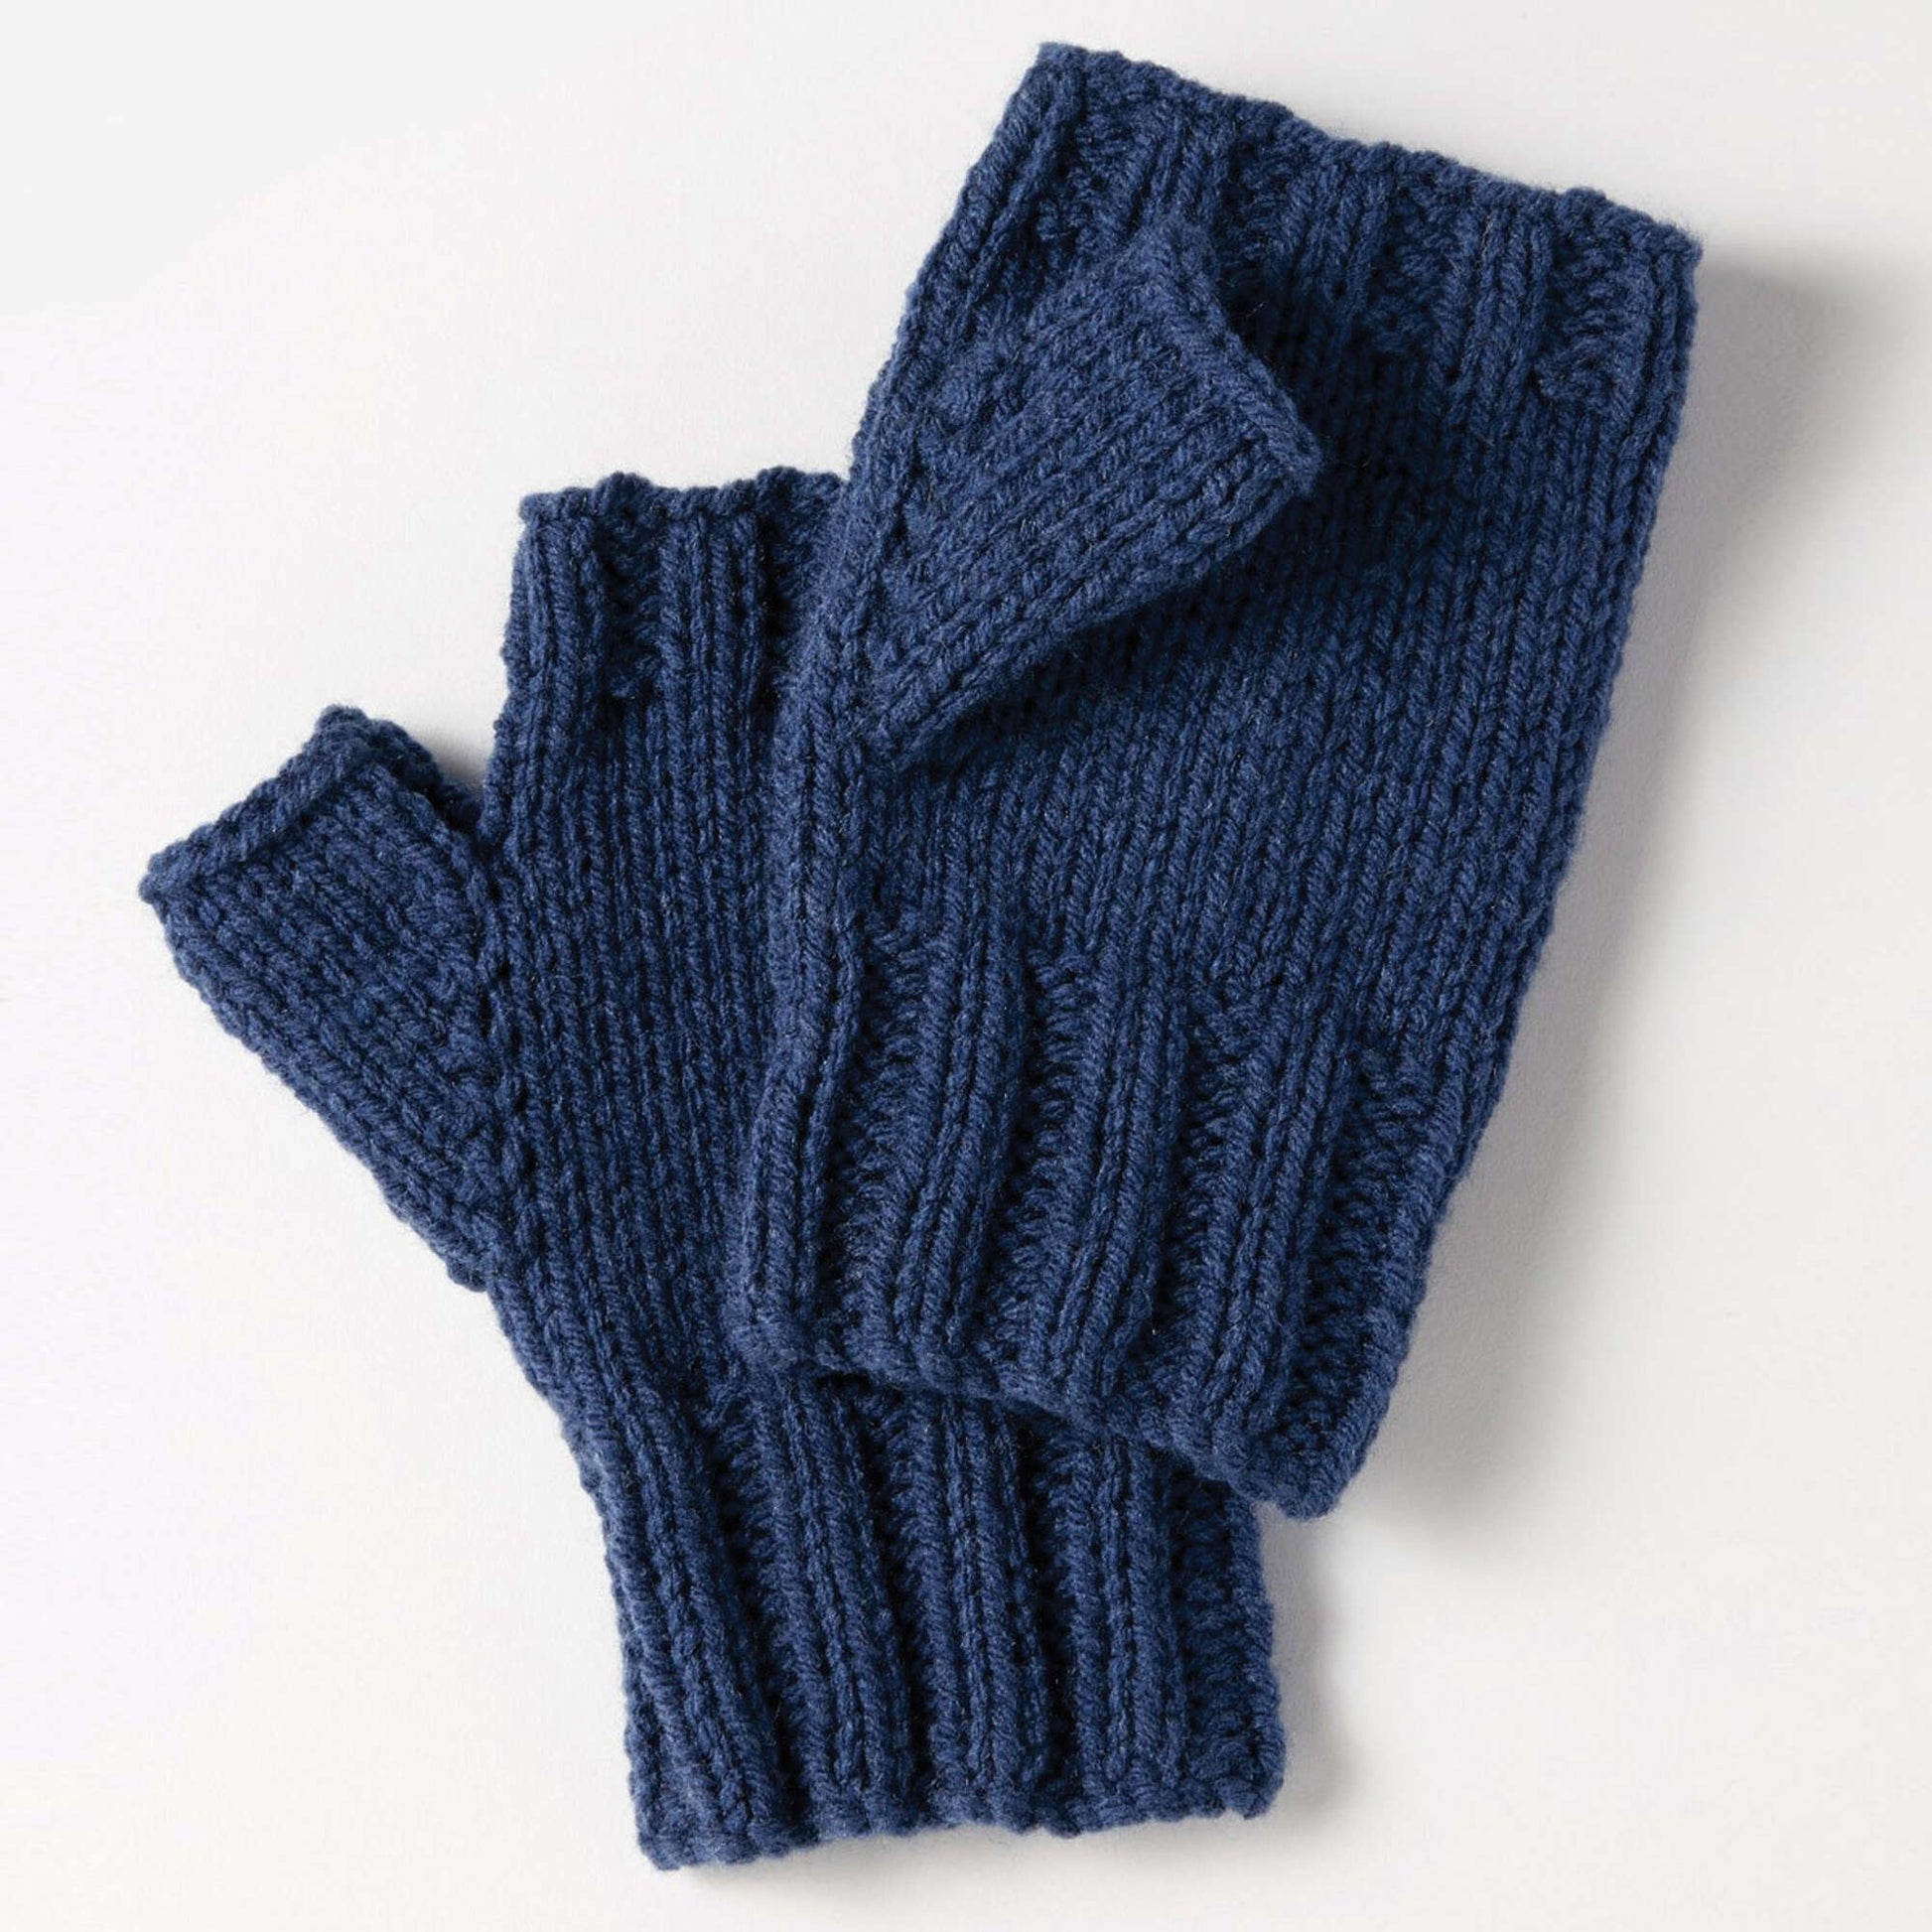 Easiest Fingerless Gloves Knitting Pattern - love. life. yarn.